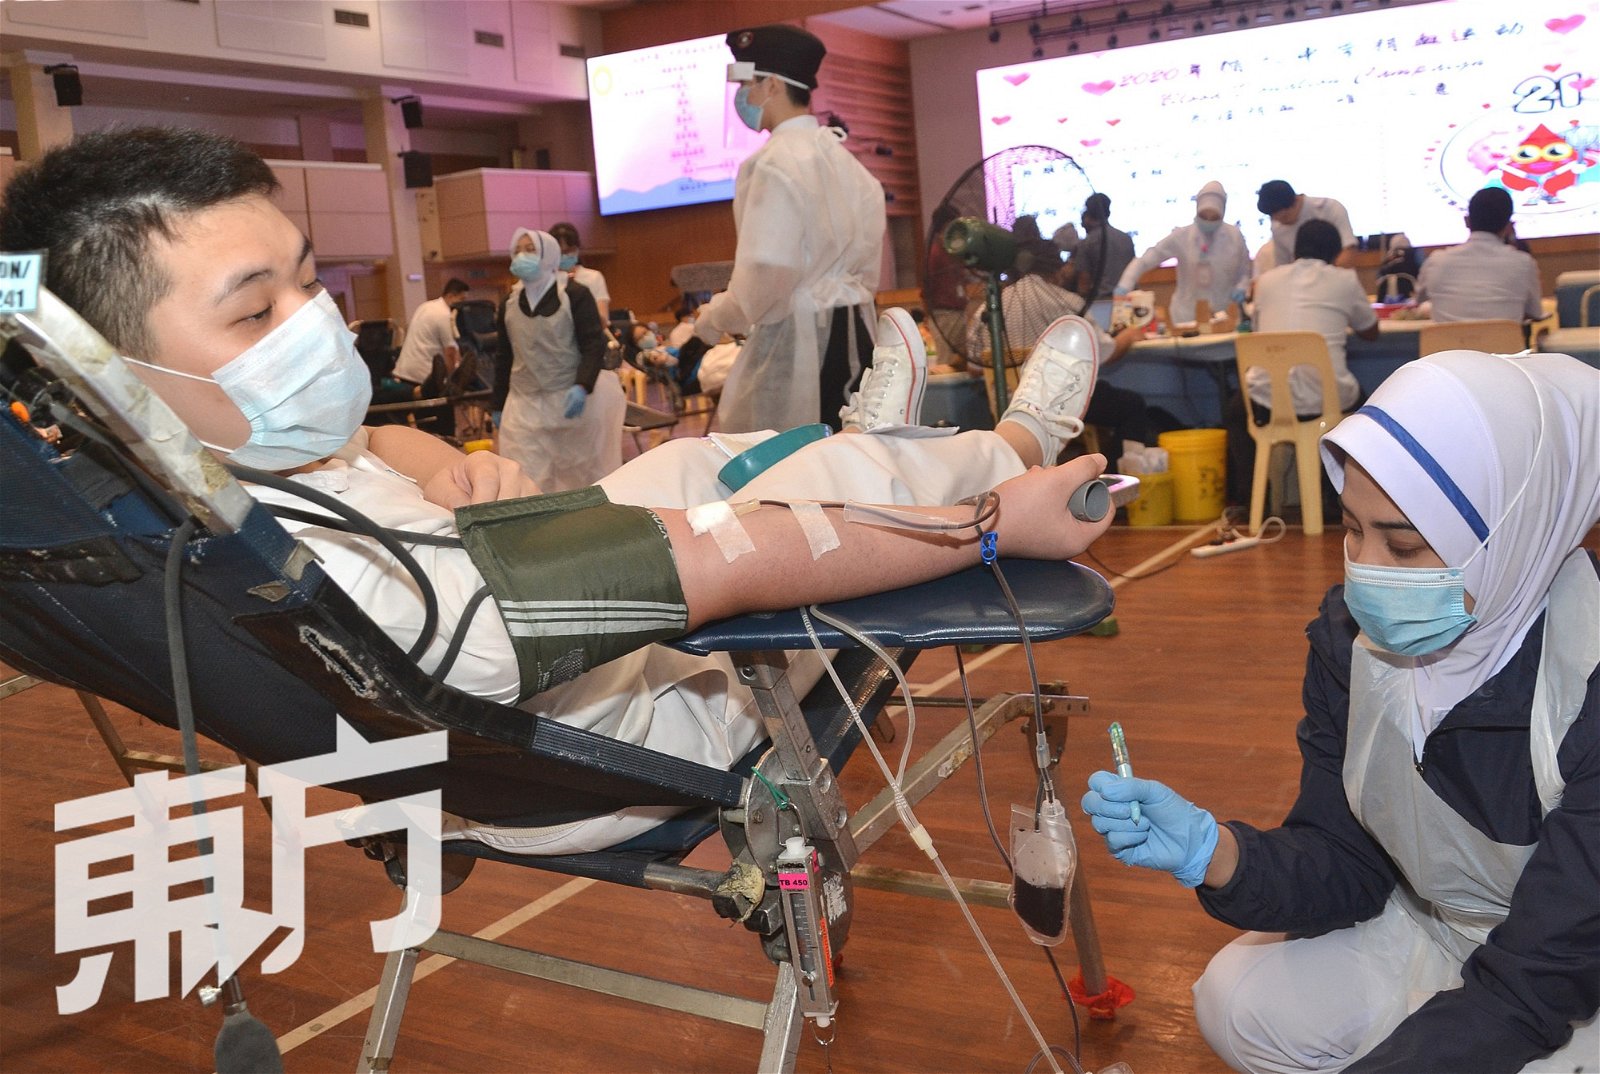 国内不少团体组织每年积极举办捐血运动，旨在为国家血库中心筹集各种类型的血液，确保国家血库的血液供应充足。图为吉隆坡循人中学于7月6日举办一年一度的捐血运动，并获得学生及教职员们的踊跃响应。